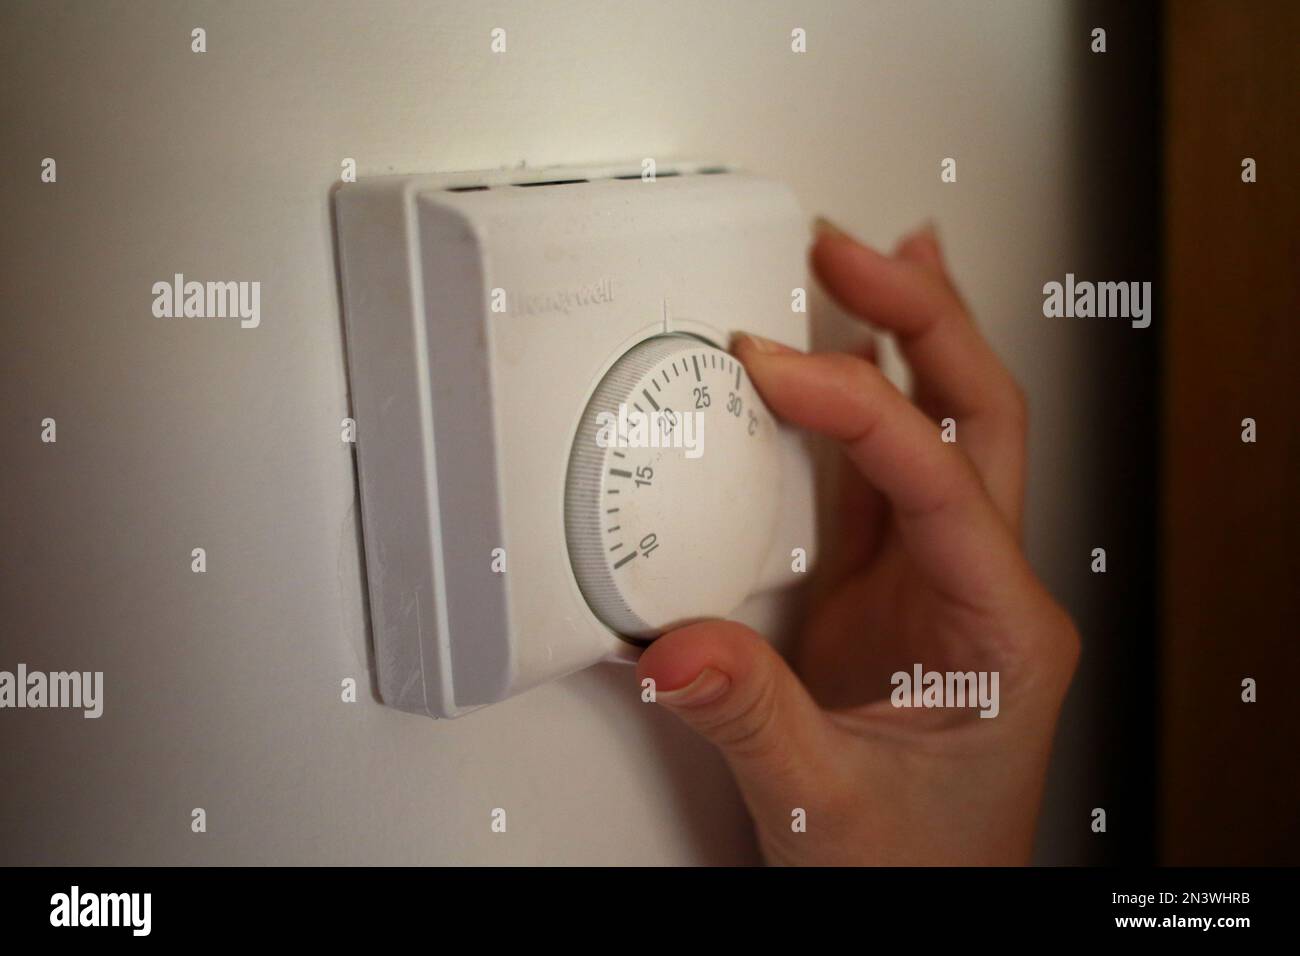 Photo de dossier datée du 19/09/13 d'une personne utilisant un thermostat de chauffage central, comme un cinquième des parents en Écosse nourrissent des membres de la famille avant eux-mêmes en raison de la crise du coût de la vie, a constaté la recherche. Banque D'Images